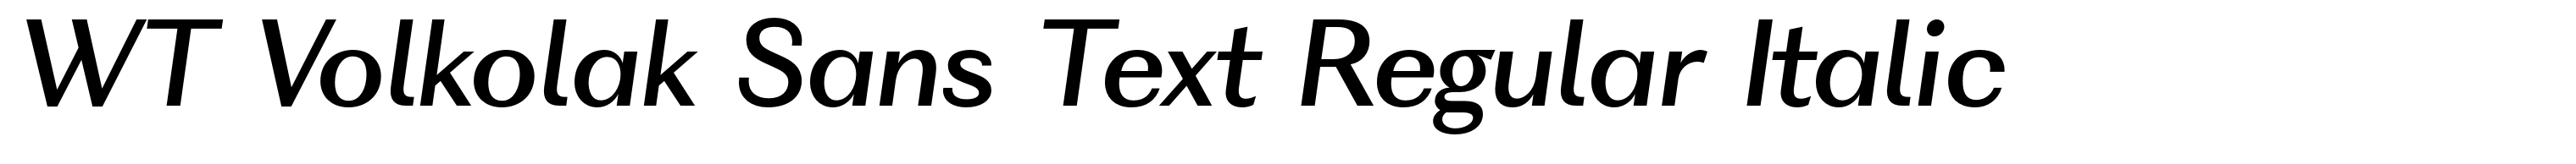 WT Volkolak Sans Text Regular Italic